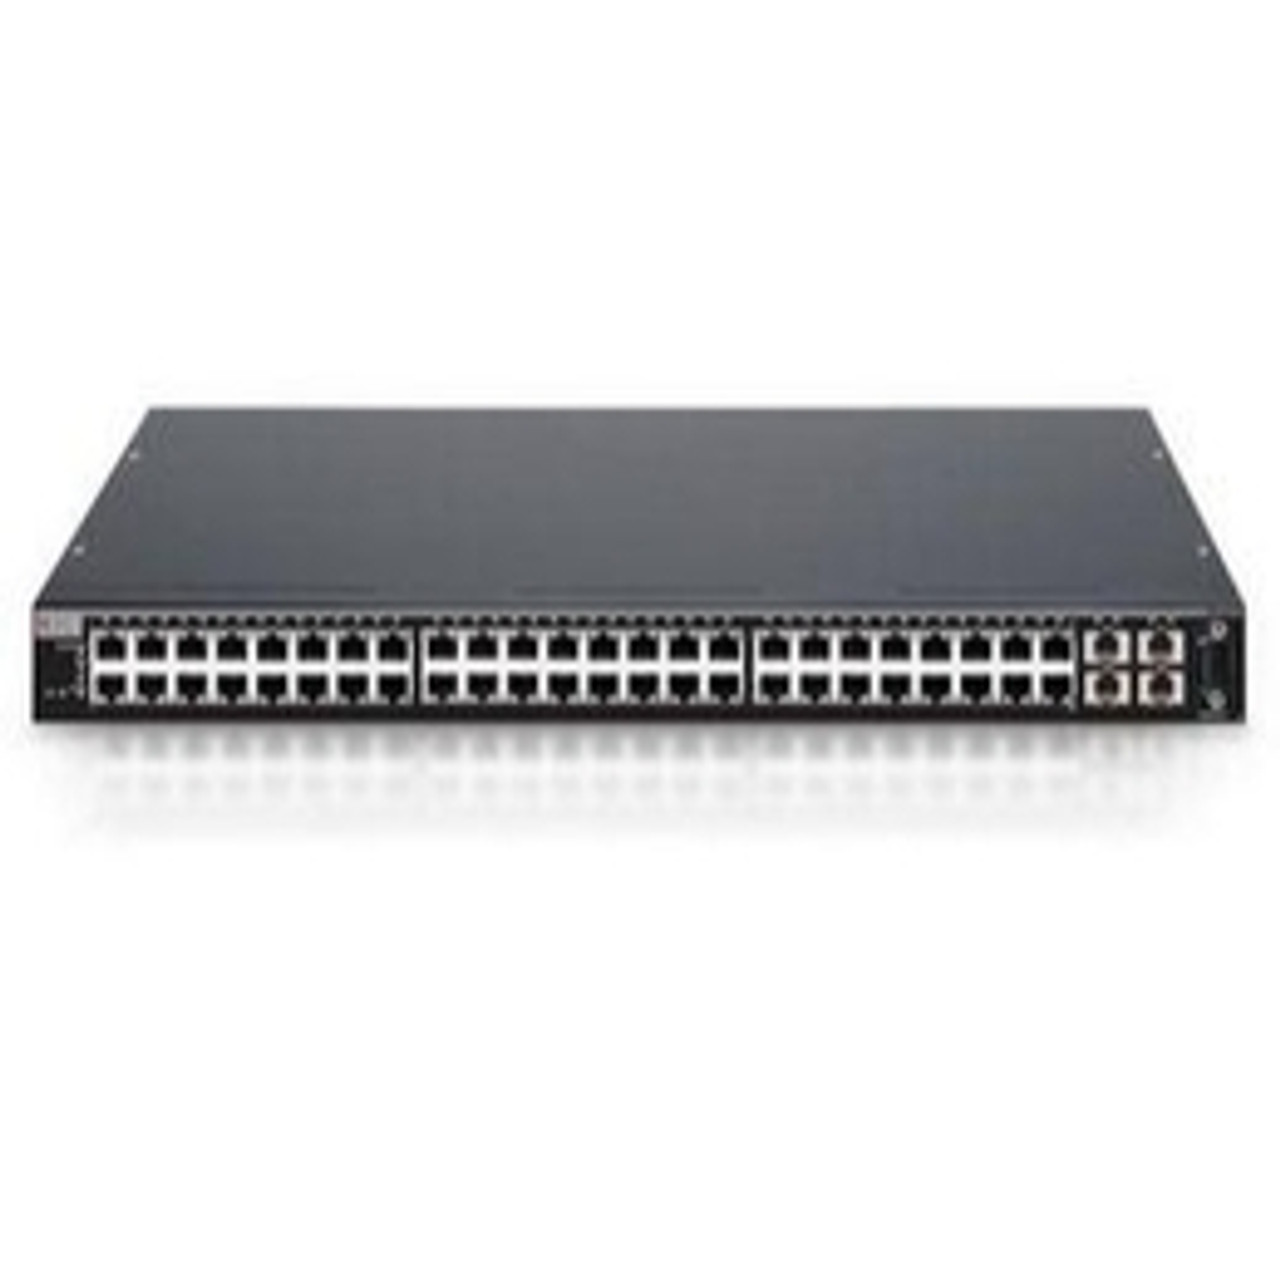 C2H124-48 Enterasys Networks Matrix C2 Gigabit Stackable Switch C2H12448 Switch 48-Ports EN Fast EN 10BaseT 100BaseTX + 4 x SFP (empty) stackable